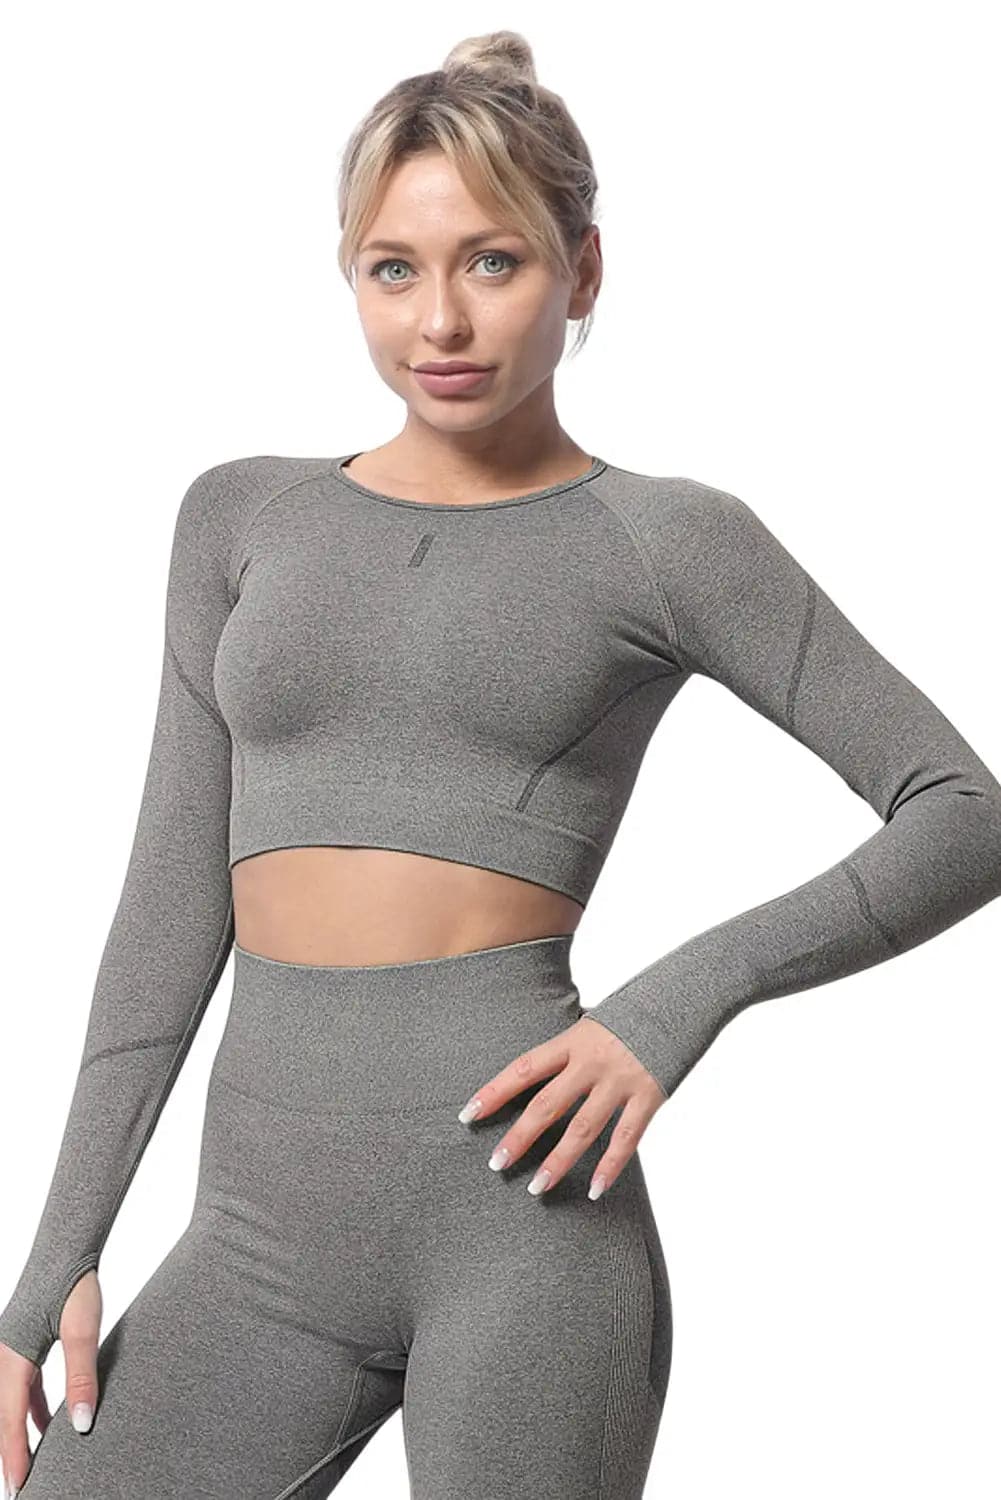 Black Solid Color Long Sleeve Yoga Crop Top - Activewear